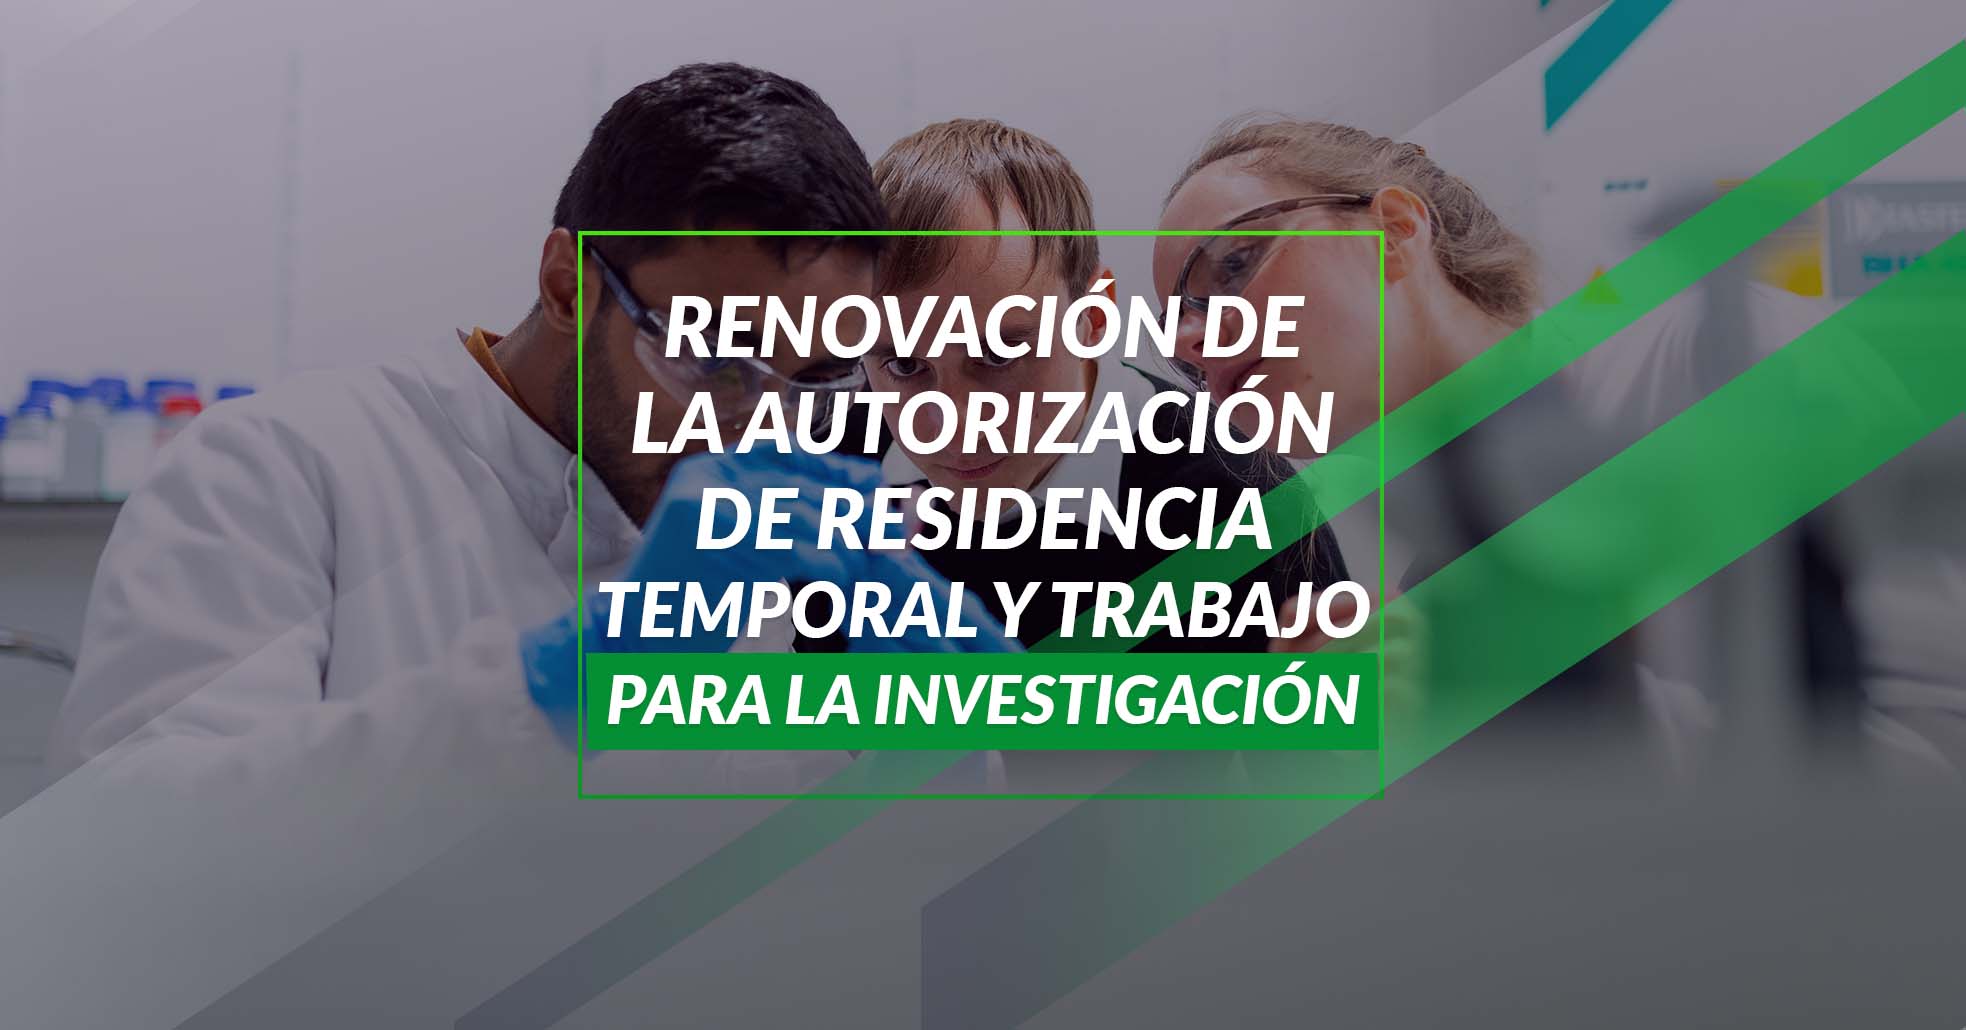 20 Renovación De La Autorización De Residencia Temporal Y Trabajo Para La Investigación